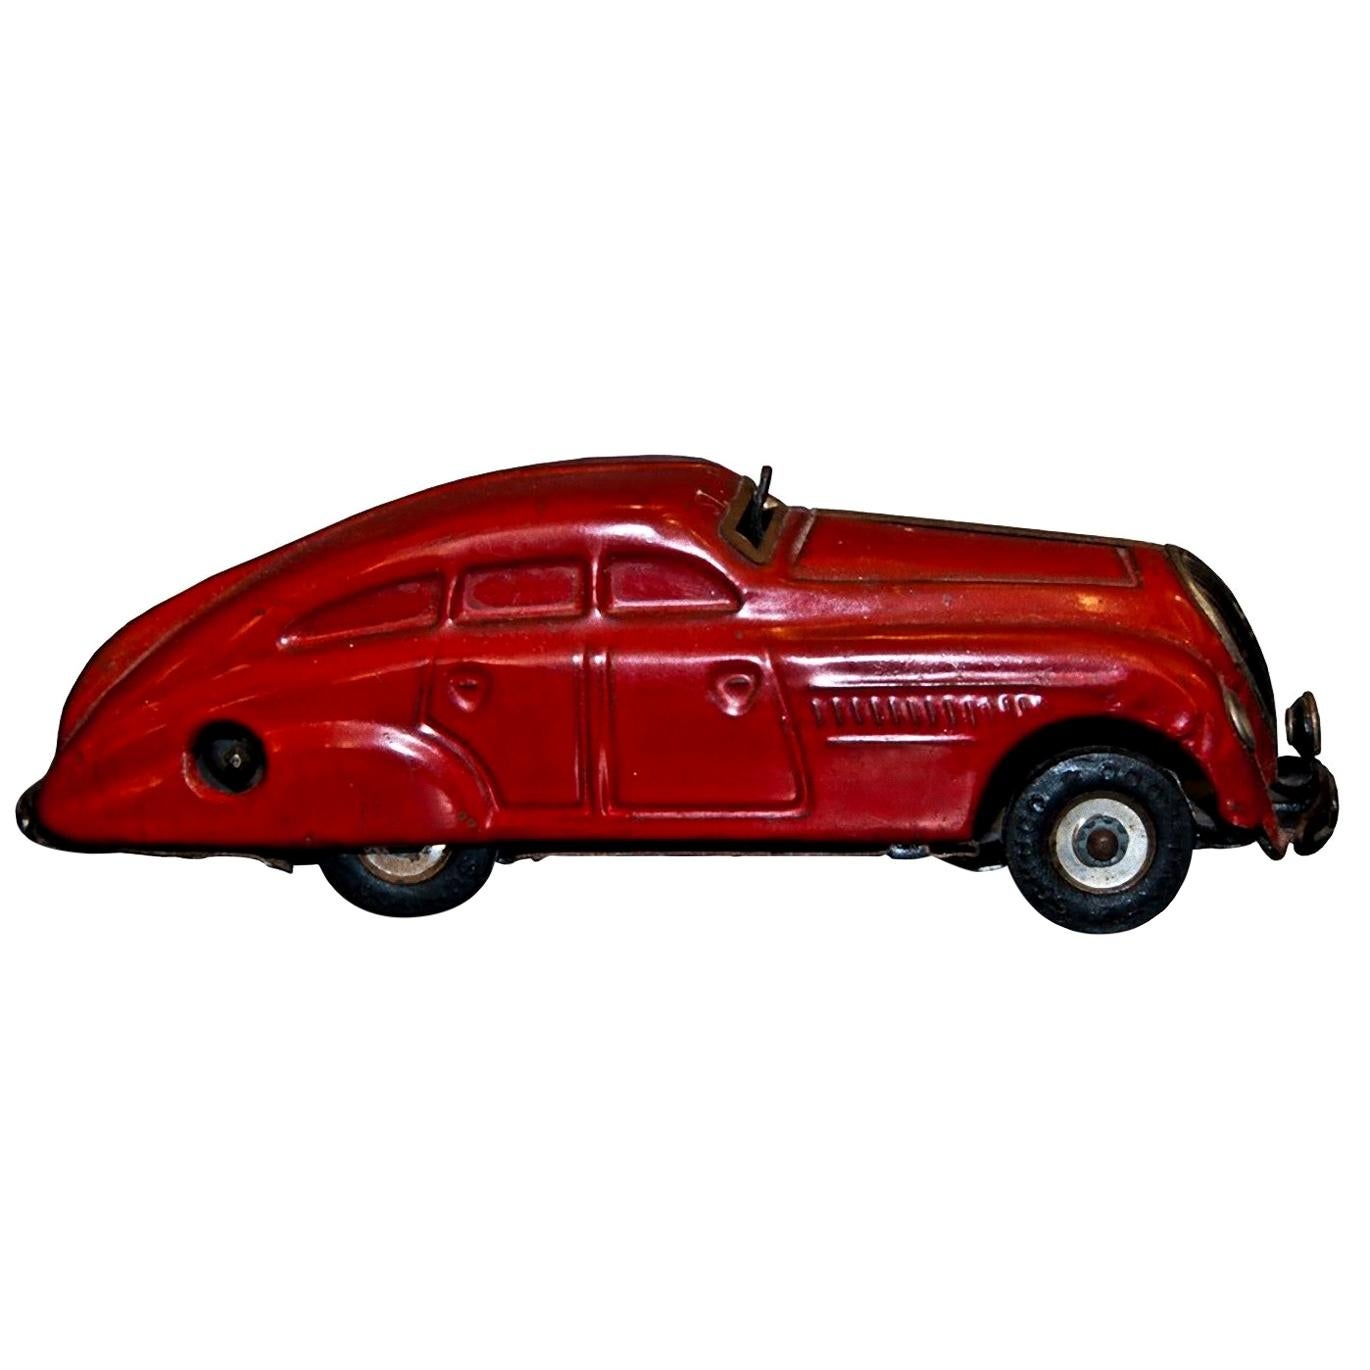 Vintage-Spielzeug, Schuco 1750 Auto, hergestellt in Deutschland, Mitte des 20. Jahrhunderts